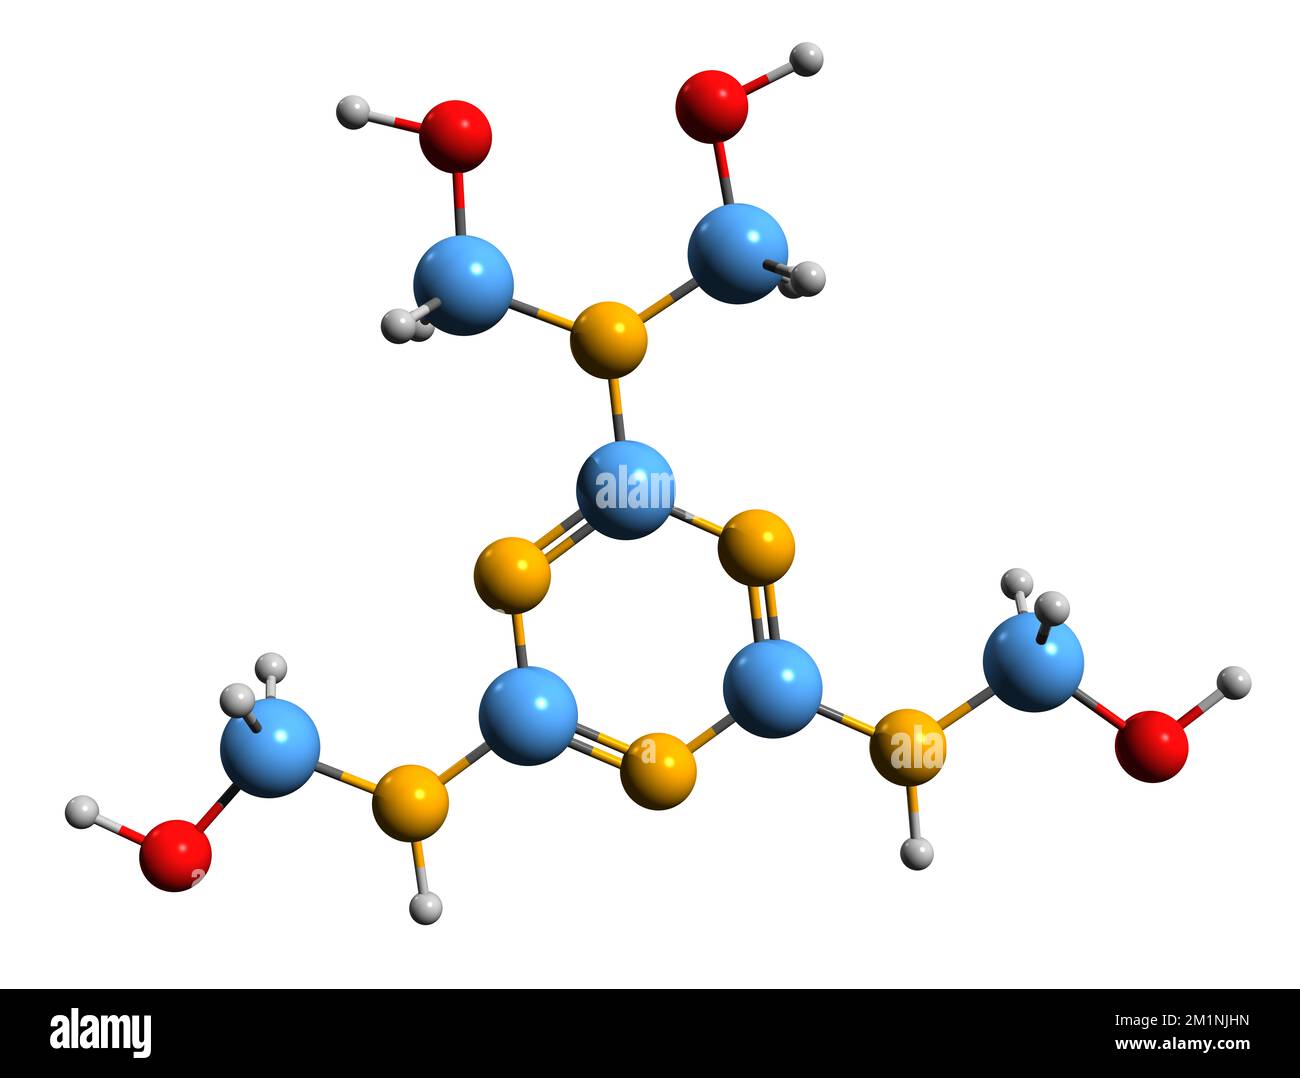 3D-Bild einer Tetrahydroxymethylmelamin-Skelettformel - molekularchemische Struktur einer organischen Substanz, isoliert auf weißem Hintergrund Stockfoto